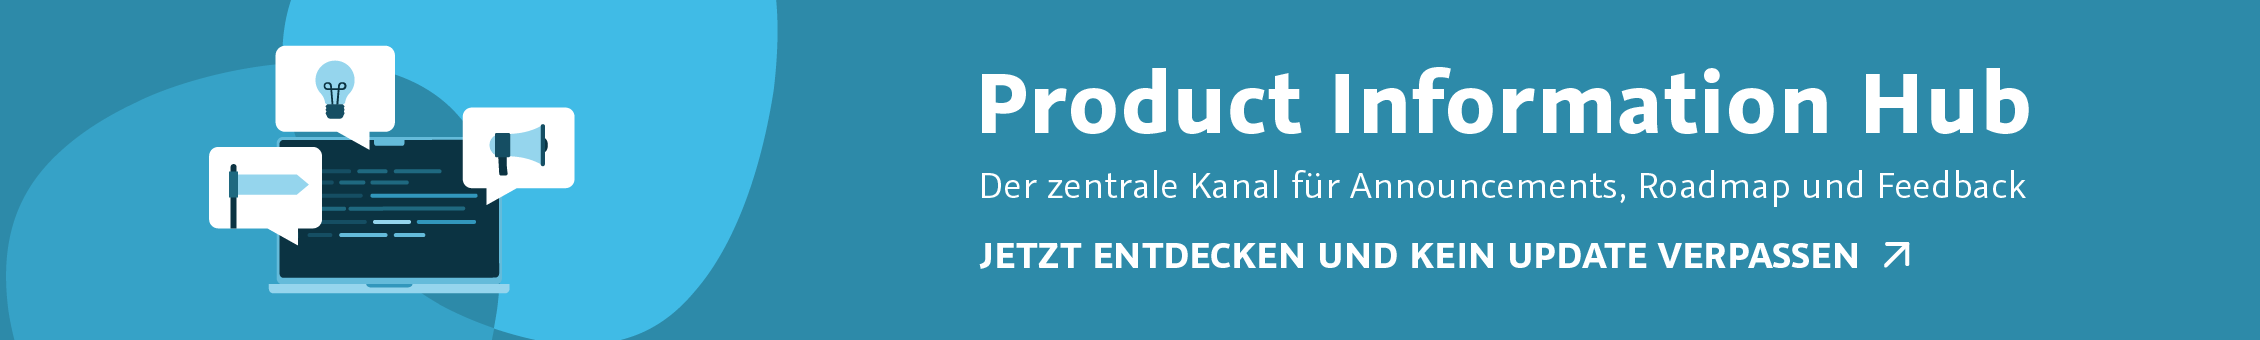 Product Information Hub - der zentrale Kanal für Announcements, Roadmap und Feedback